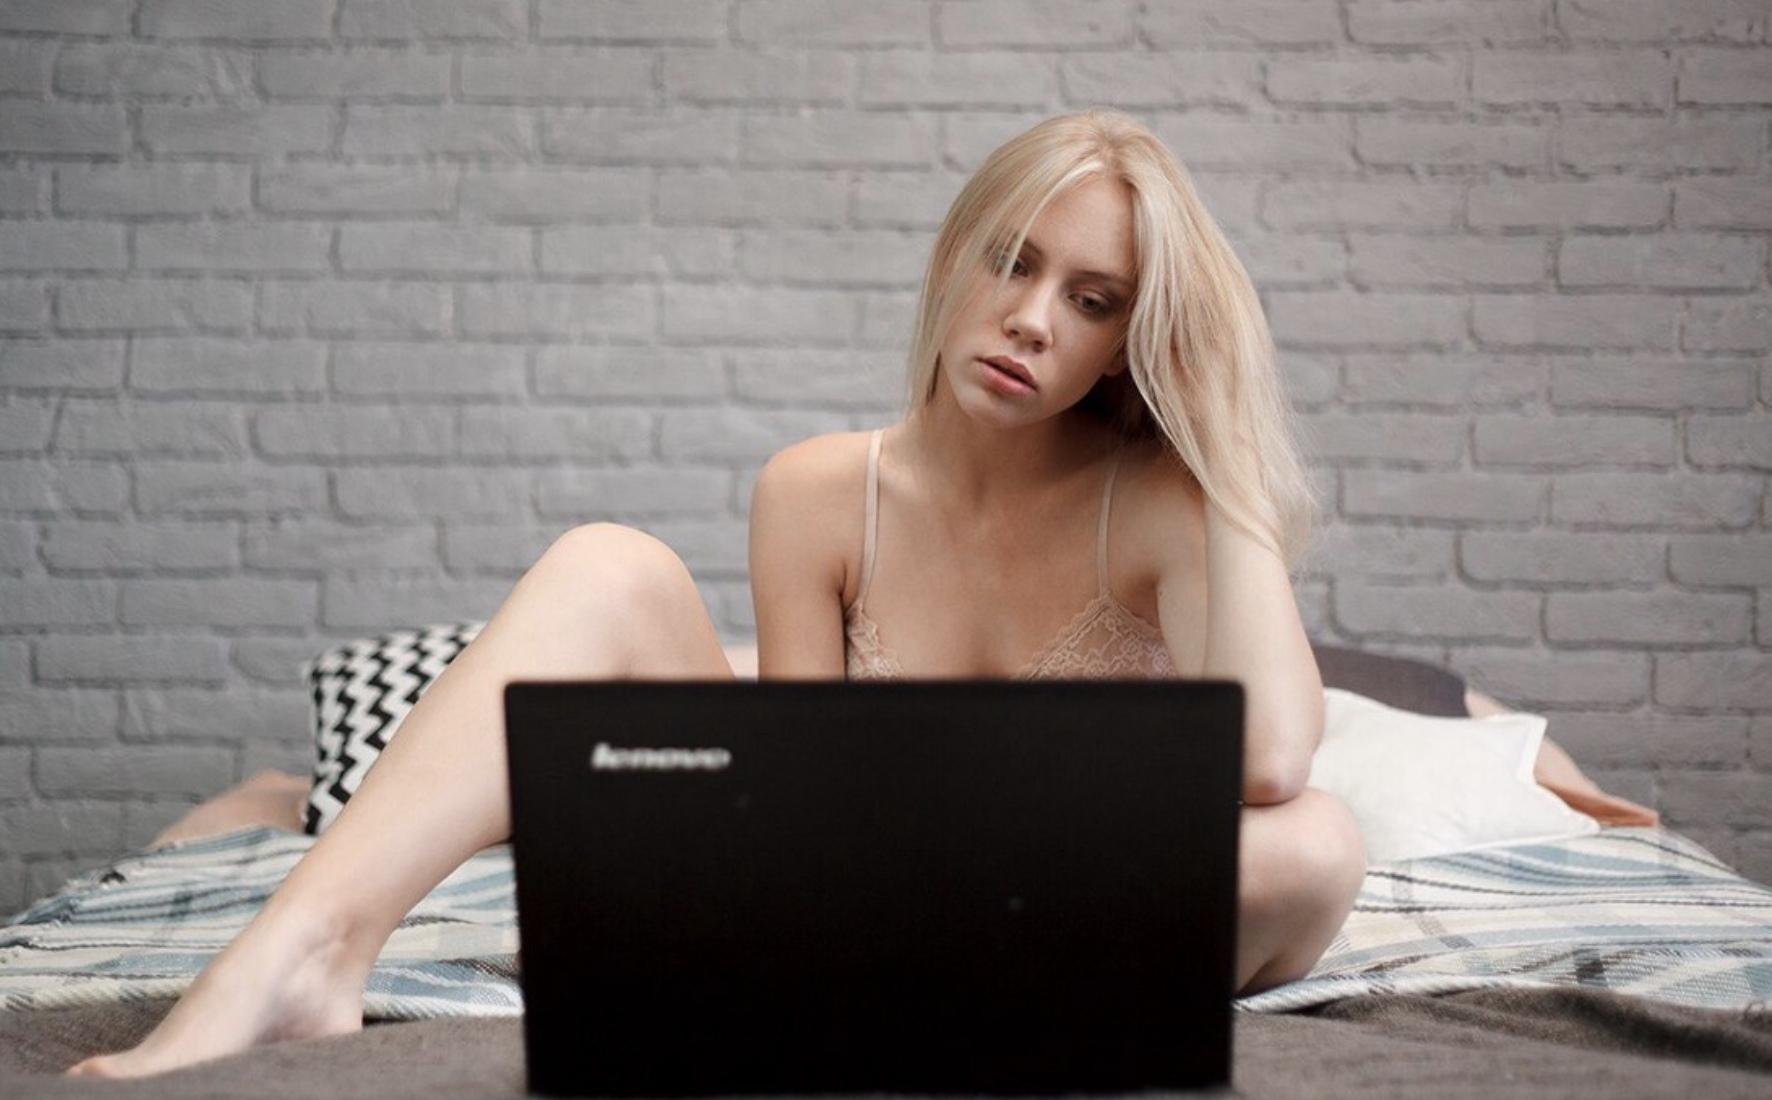 Вебка сайт русский. Девушка перед ноутбуком. Блондинка с ноутбуком. Блондинка за ноутбуком. Девушка вебкам модель.